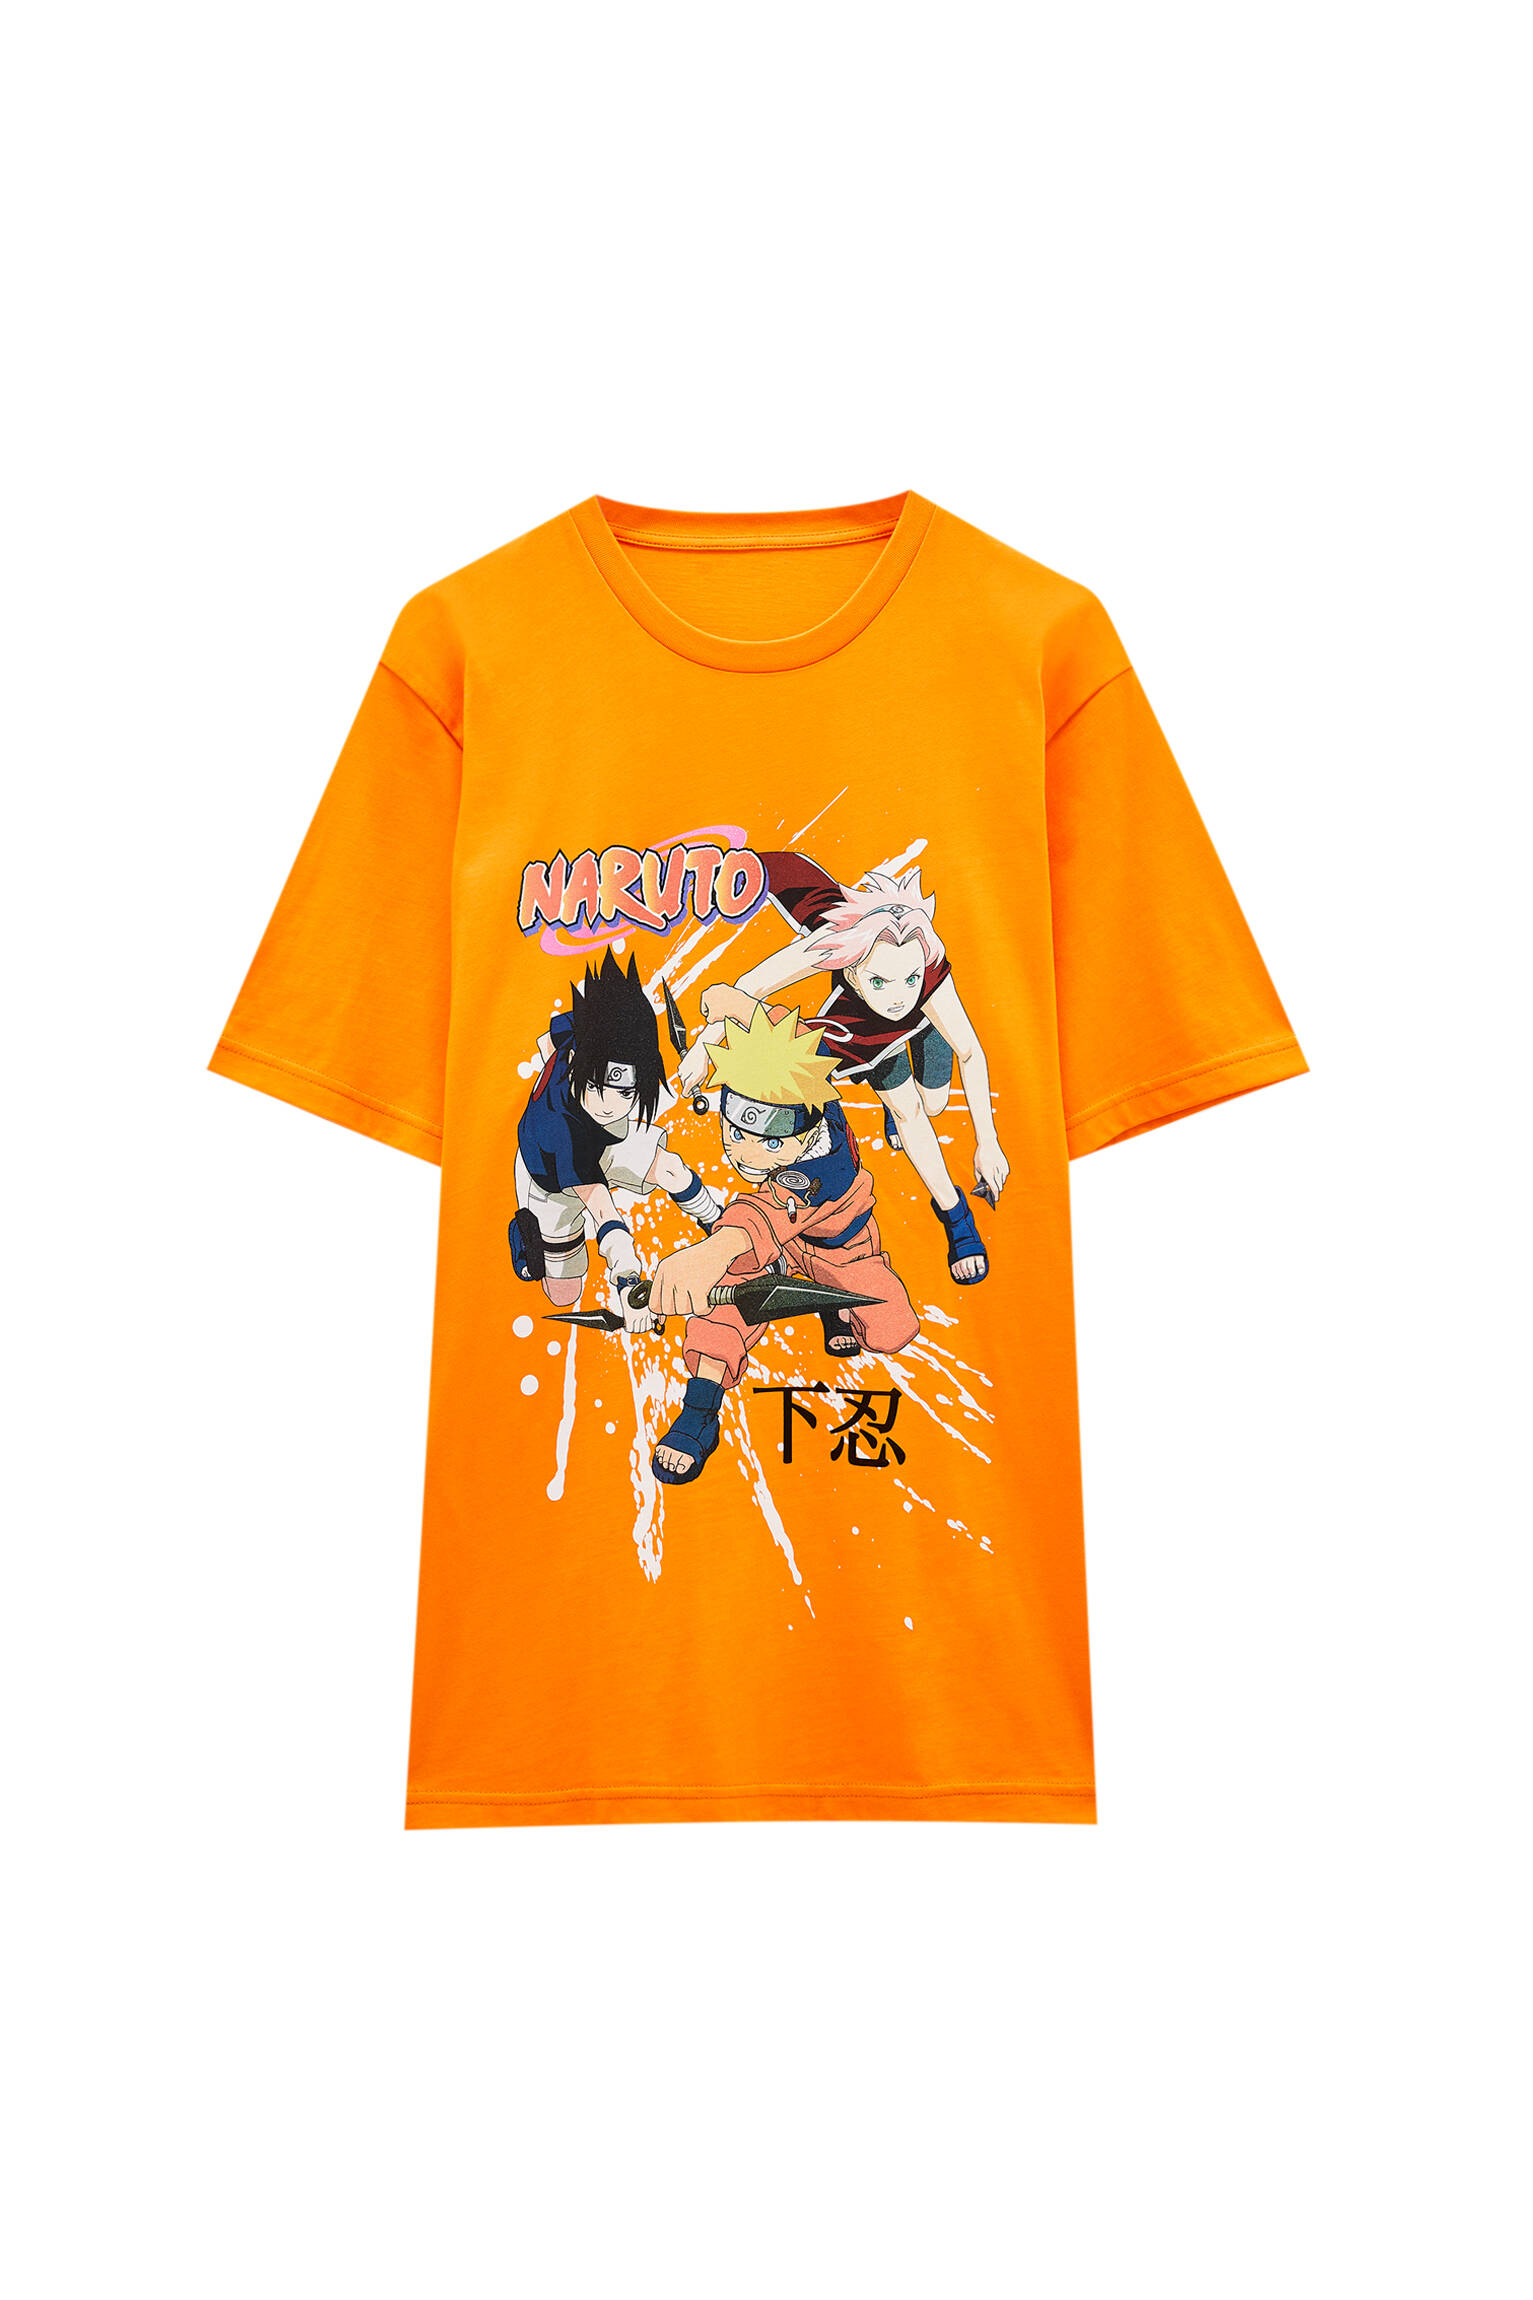 Pull&bear Homme T-shirt Naruto Orange à Col Rond Et Manches Courtes, Avec Illustration Contrastante.